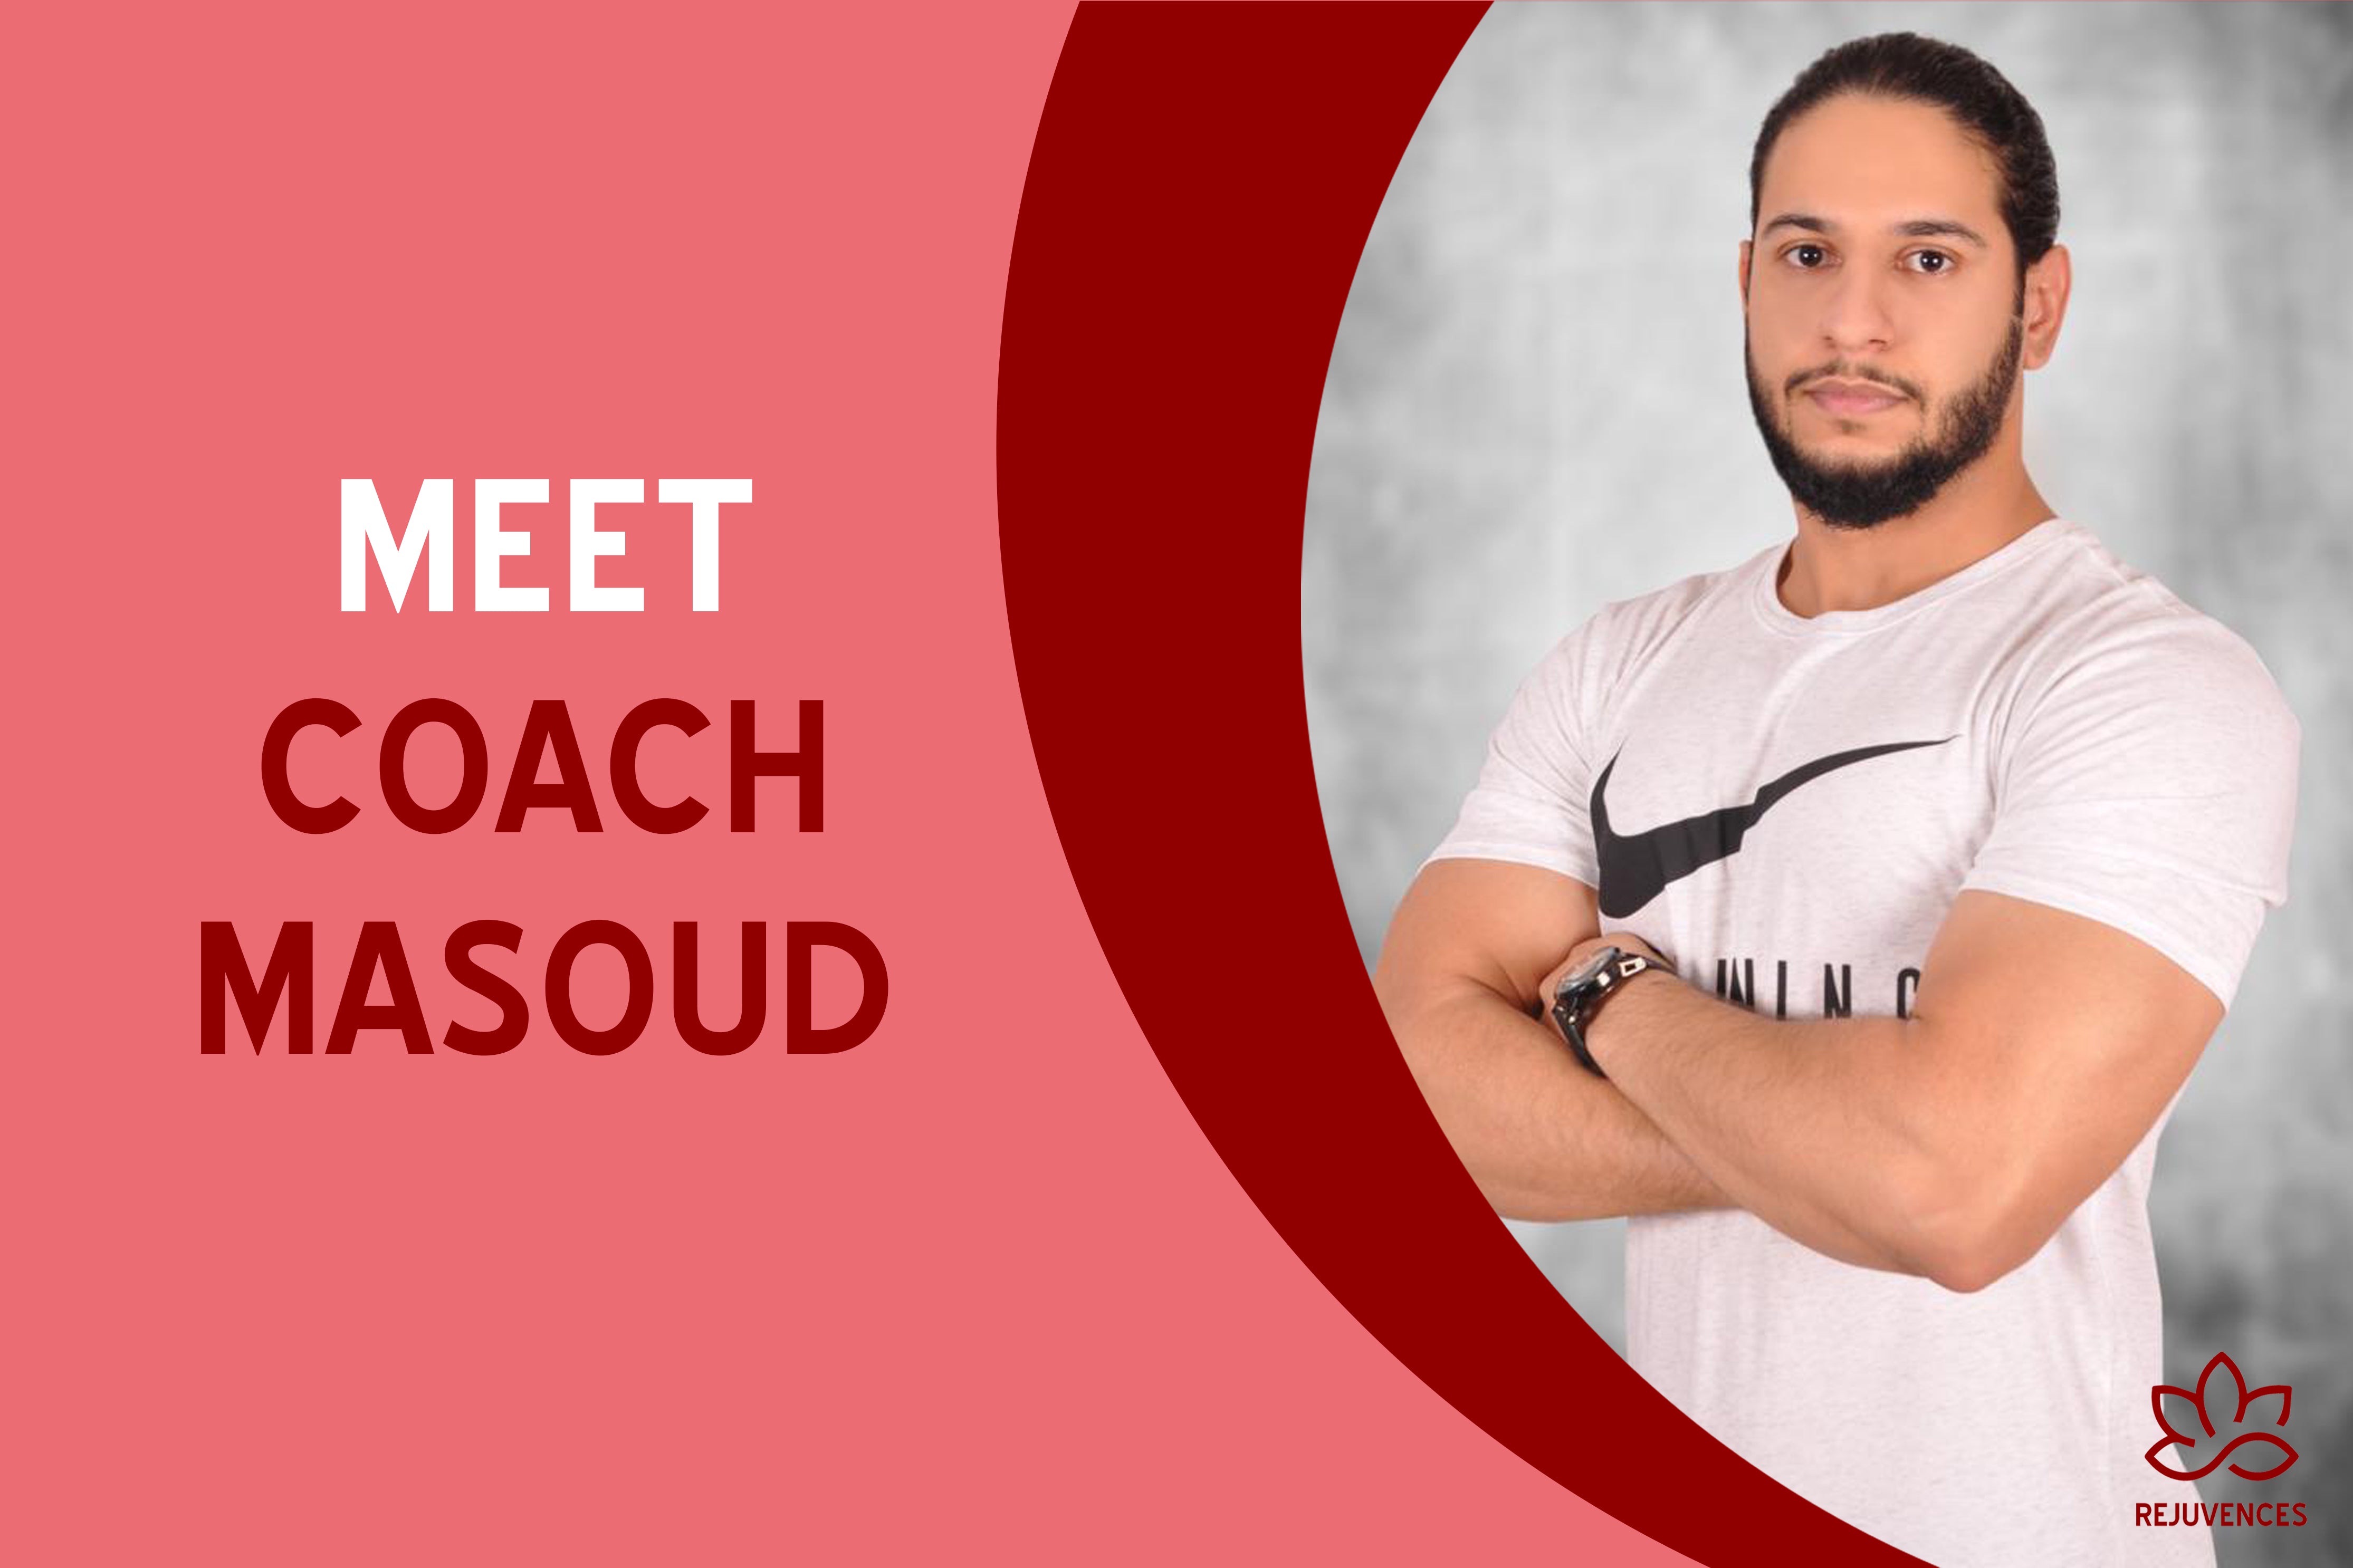 Meet Coach Masoud